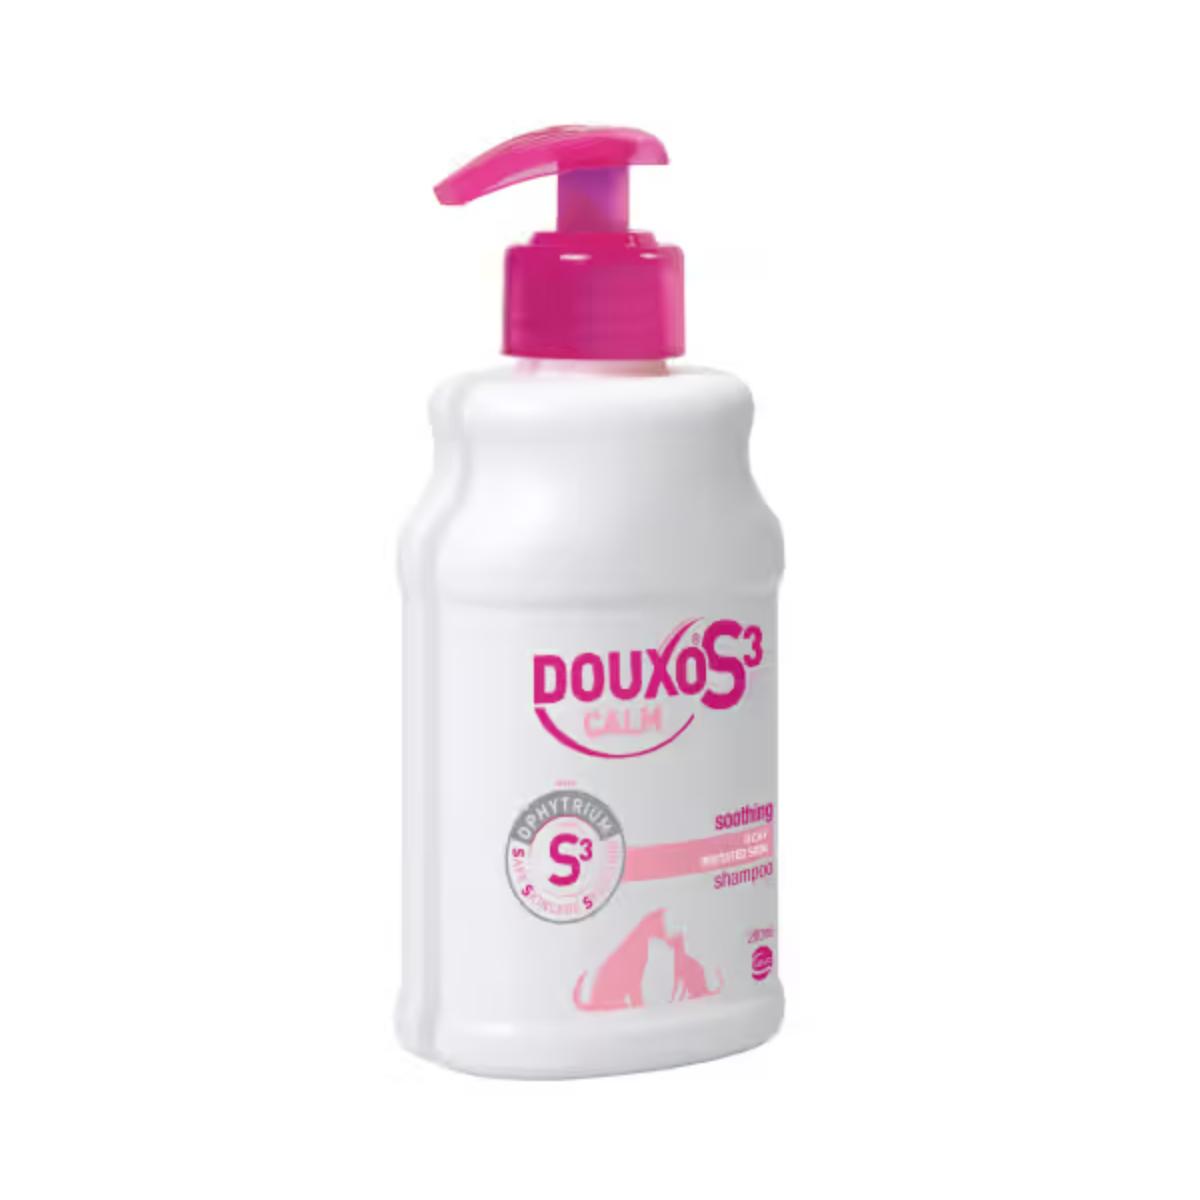 DOUXO S3 Calm, șampon câini și pisici, anti-mâncărime, calmant, flacon, 200ml